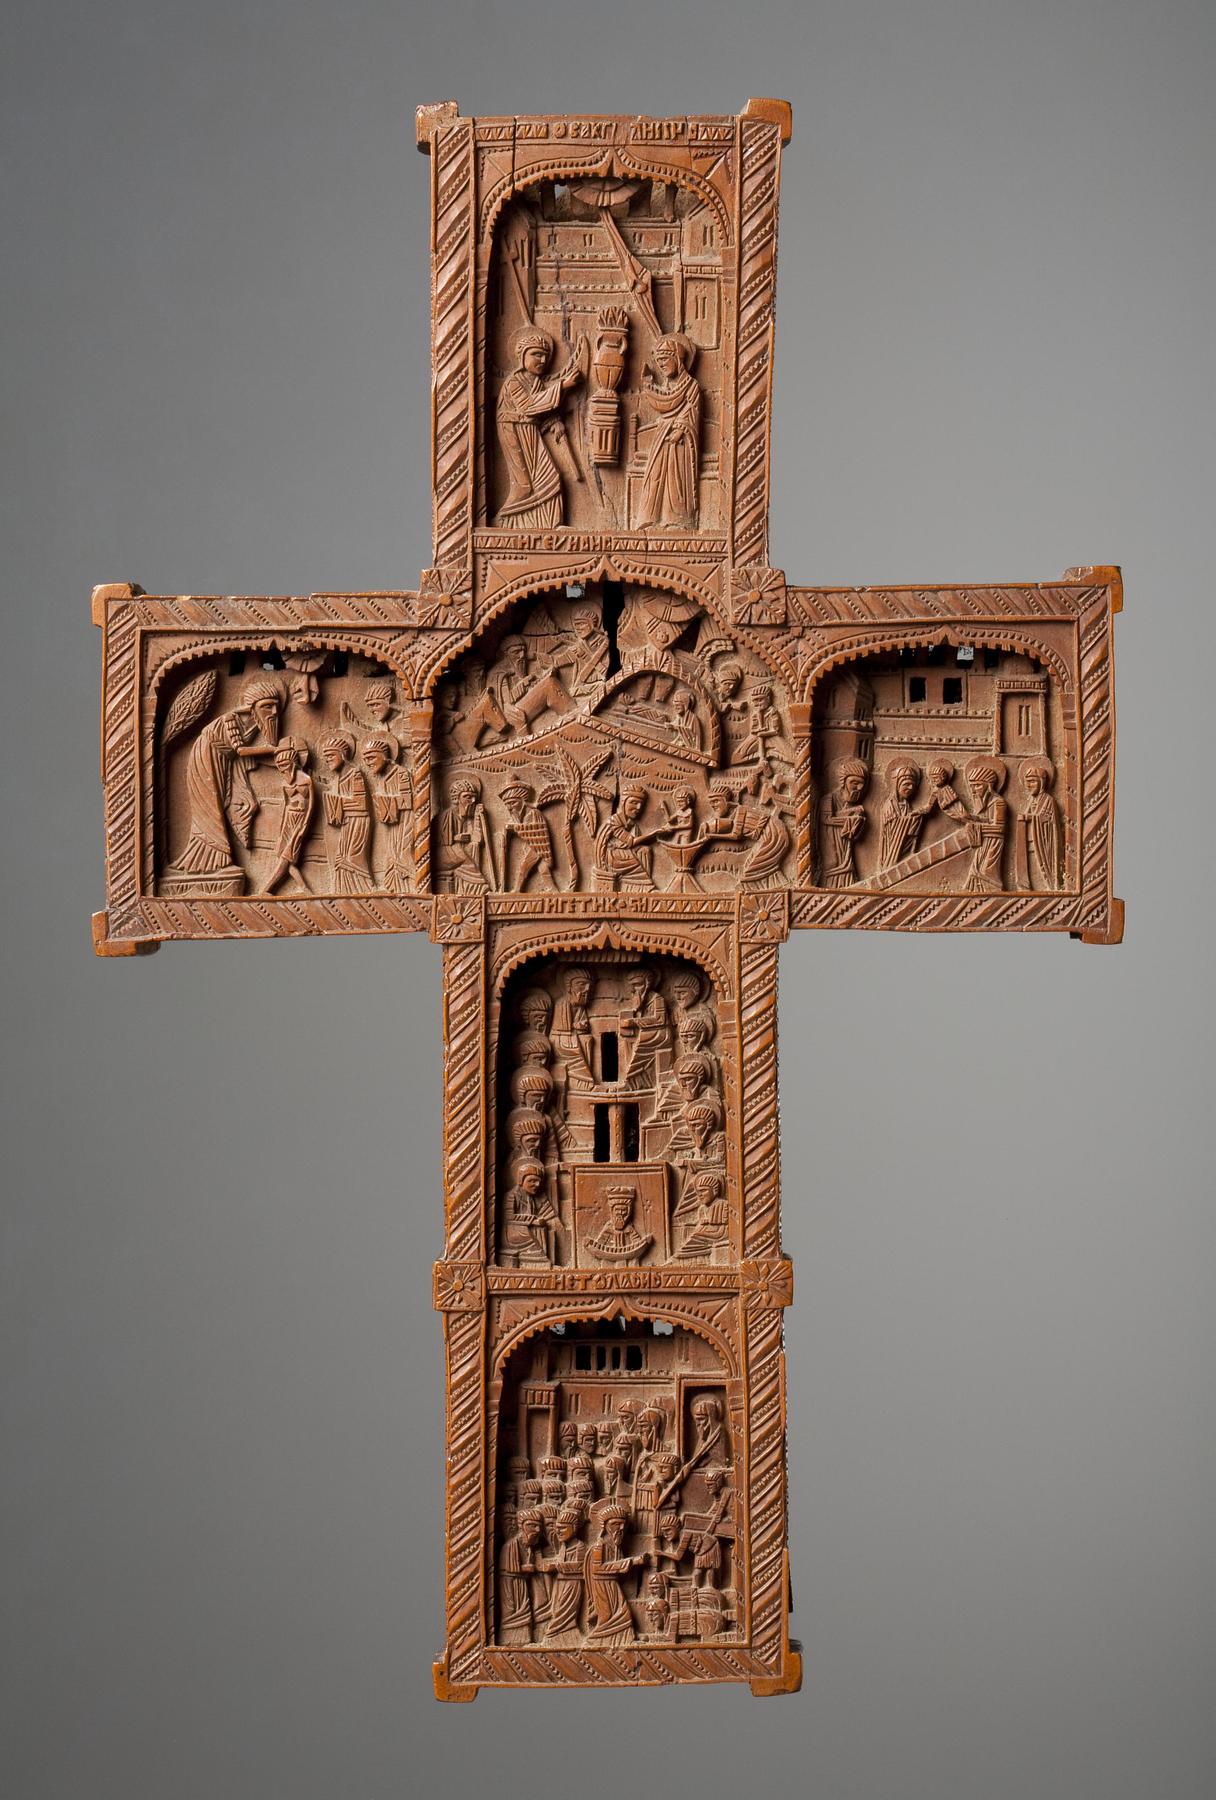 Kors med 20 nygræske religiøse fremstillinger, G55